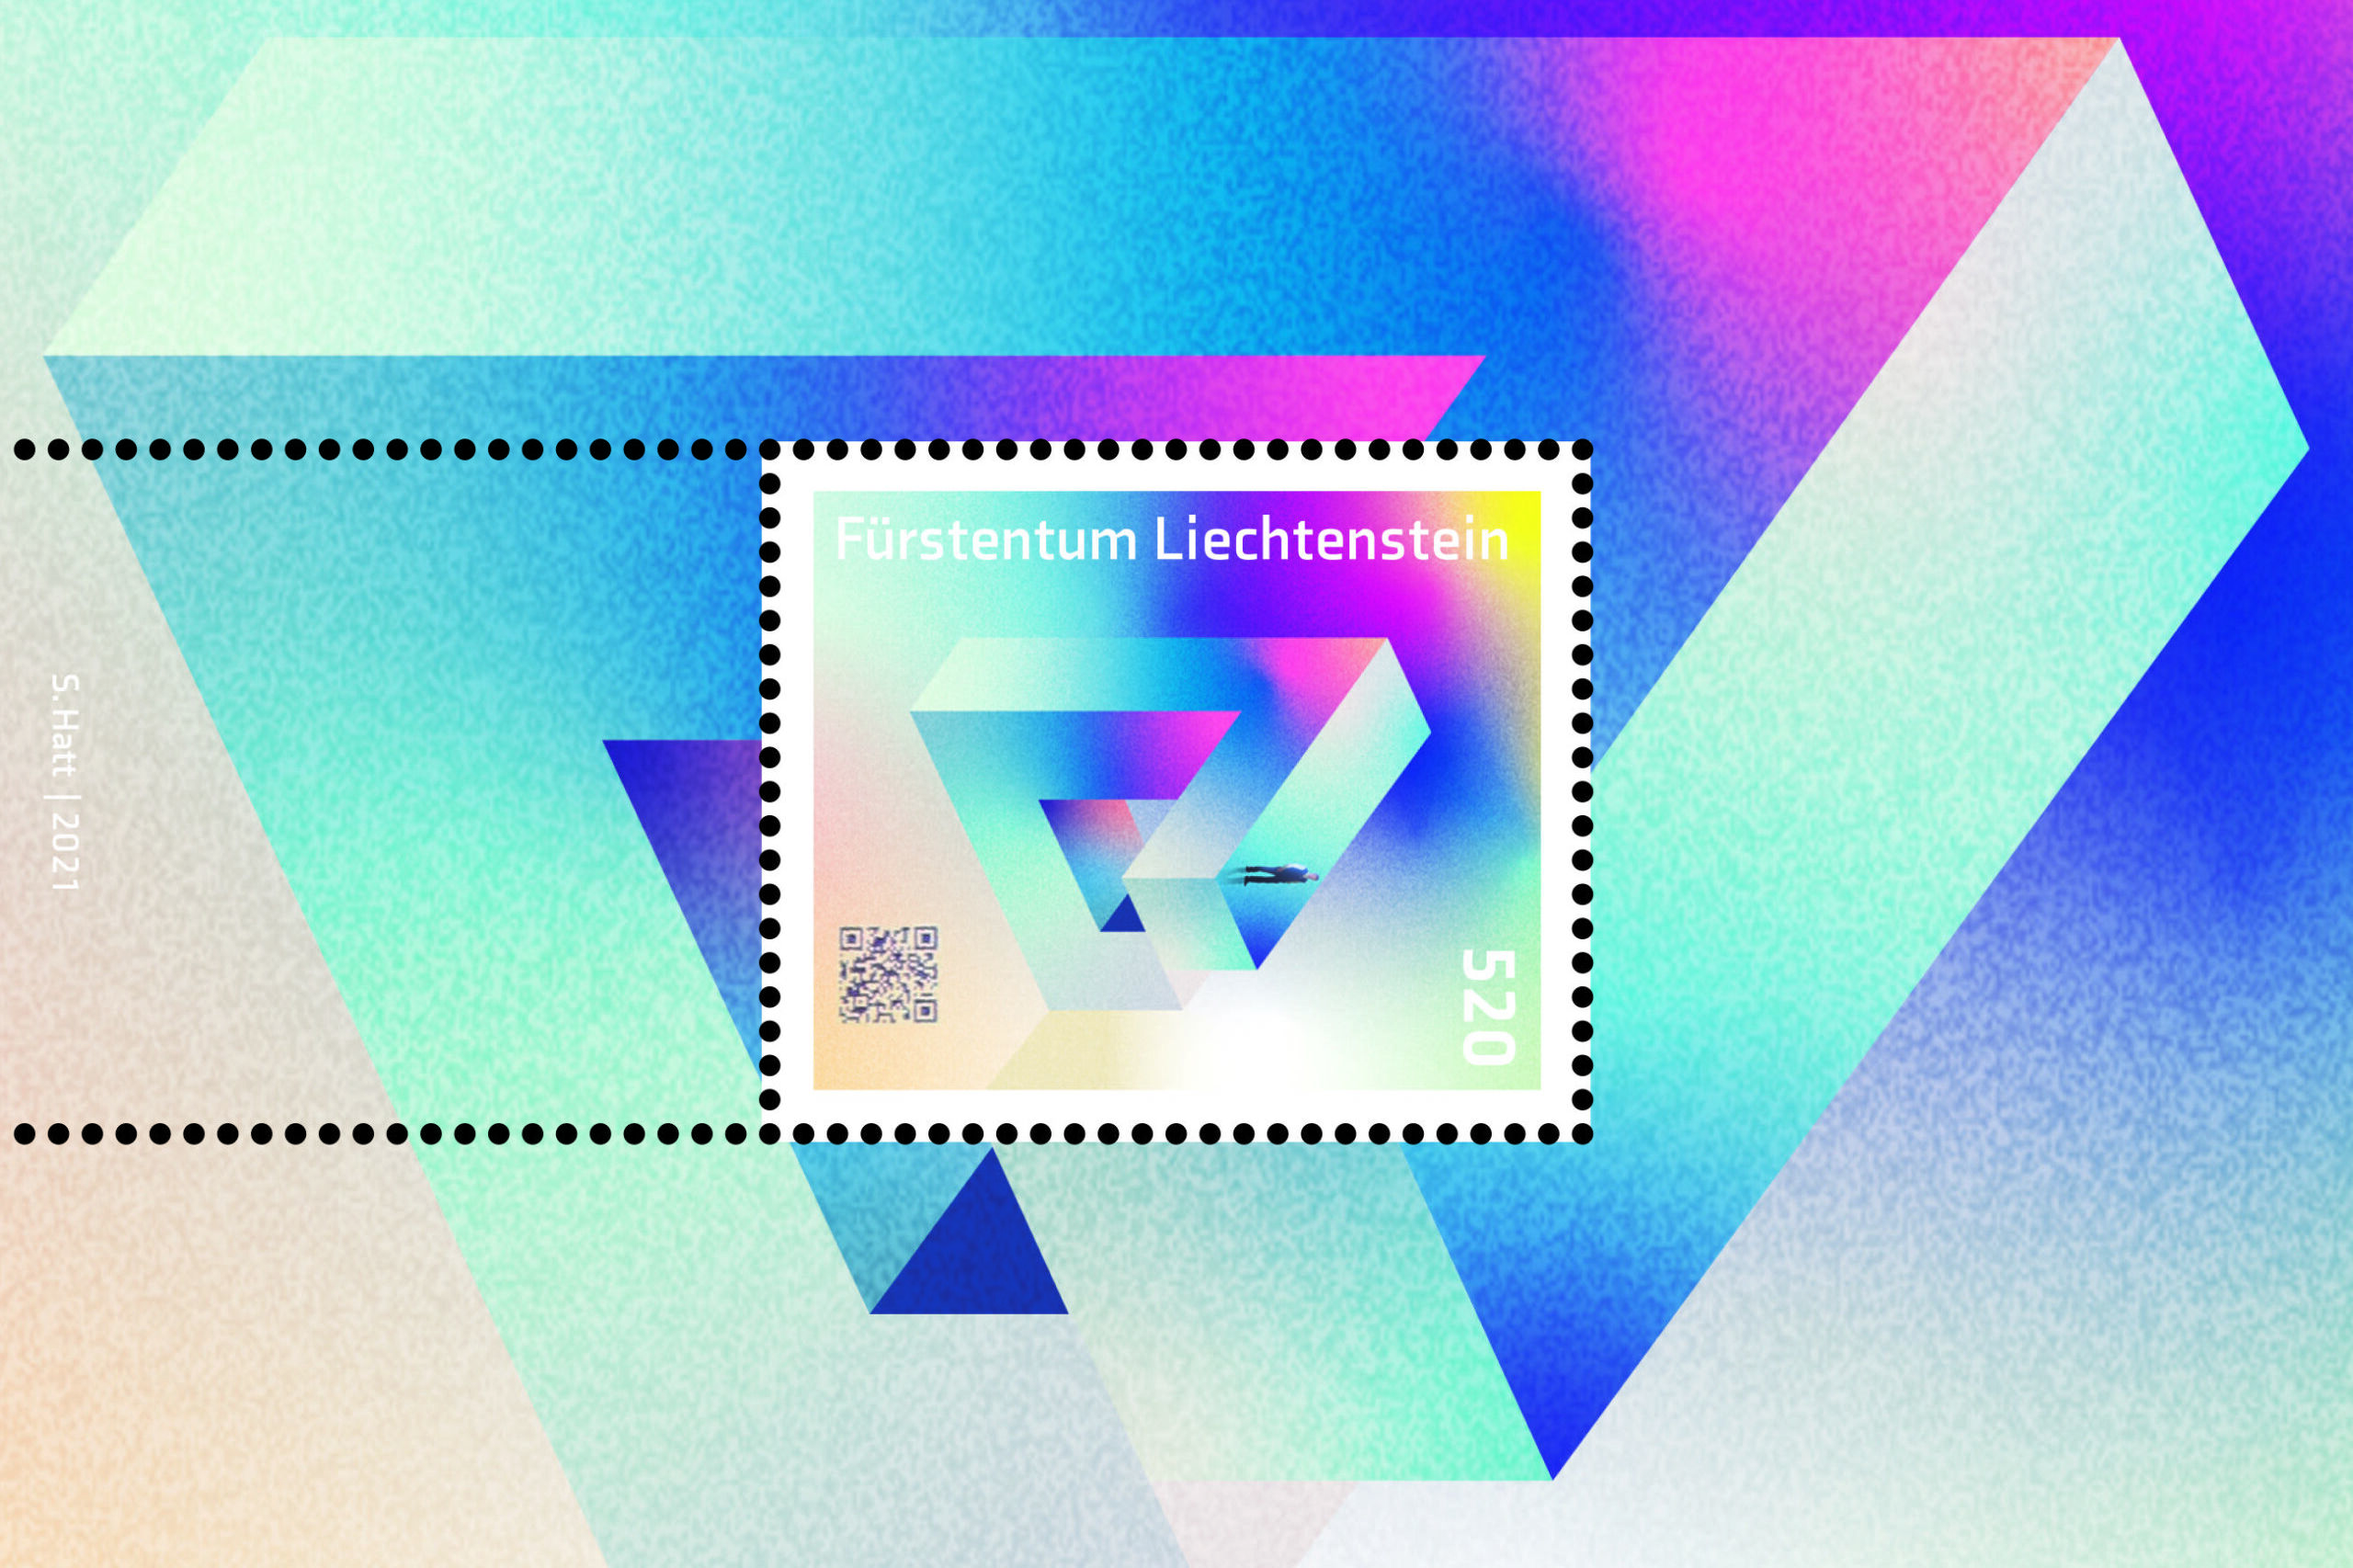 Liechtensteinin ruhtinaskunnan 4.0-leima, joka on varustettu Blockchain-tekniikalla